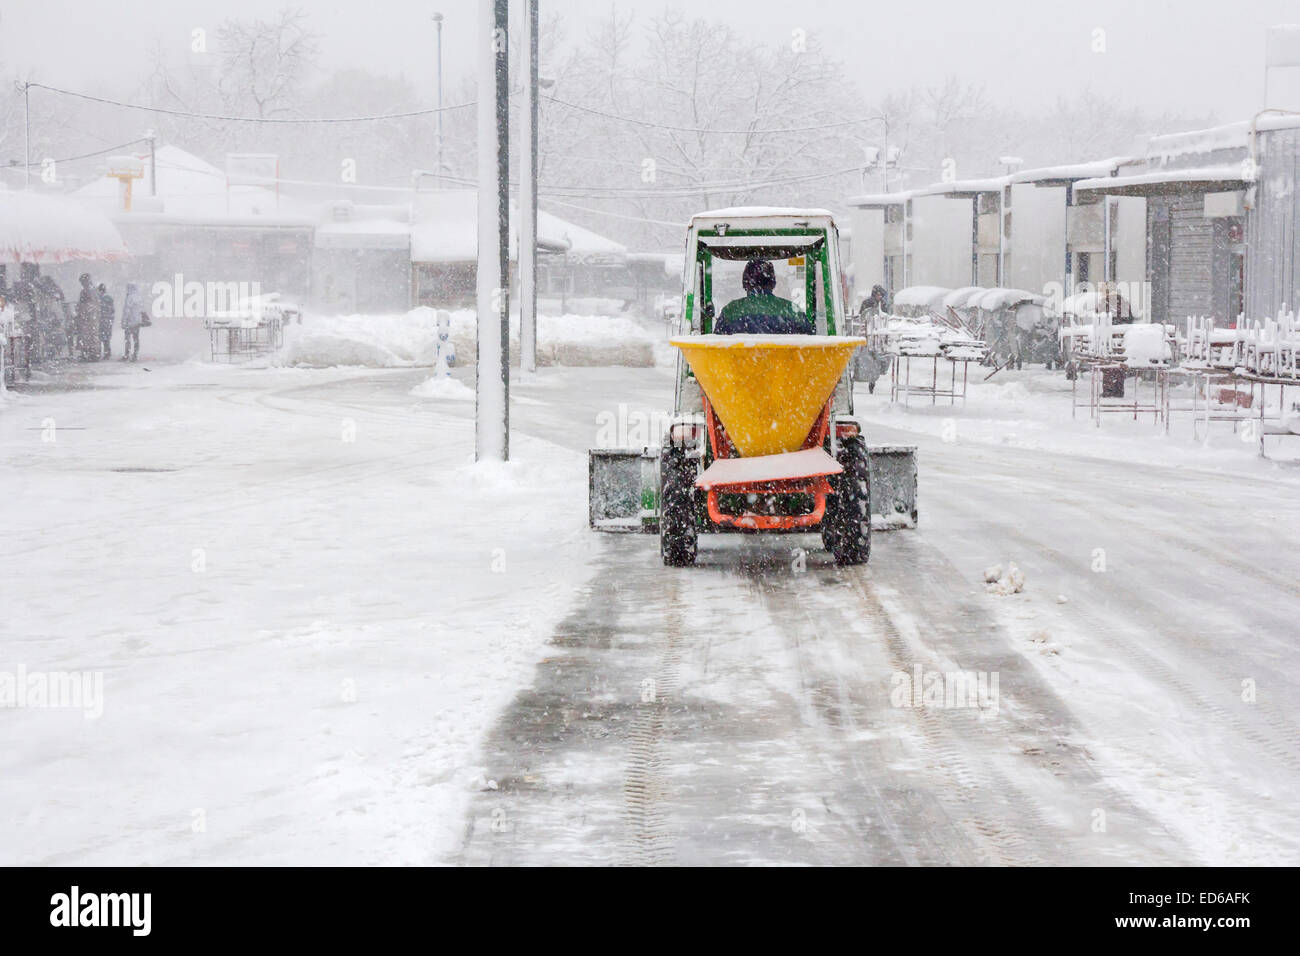 Kleines schneeräumfahrzeug, das schnee auf dem stadtplatz entfernt gelber  oder orangefarbener traktor, der den schnee reinigt